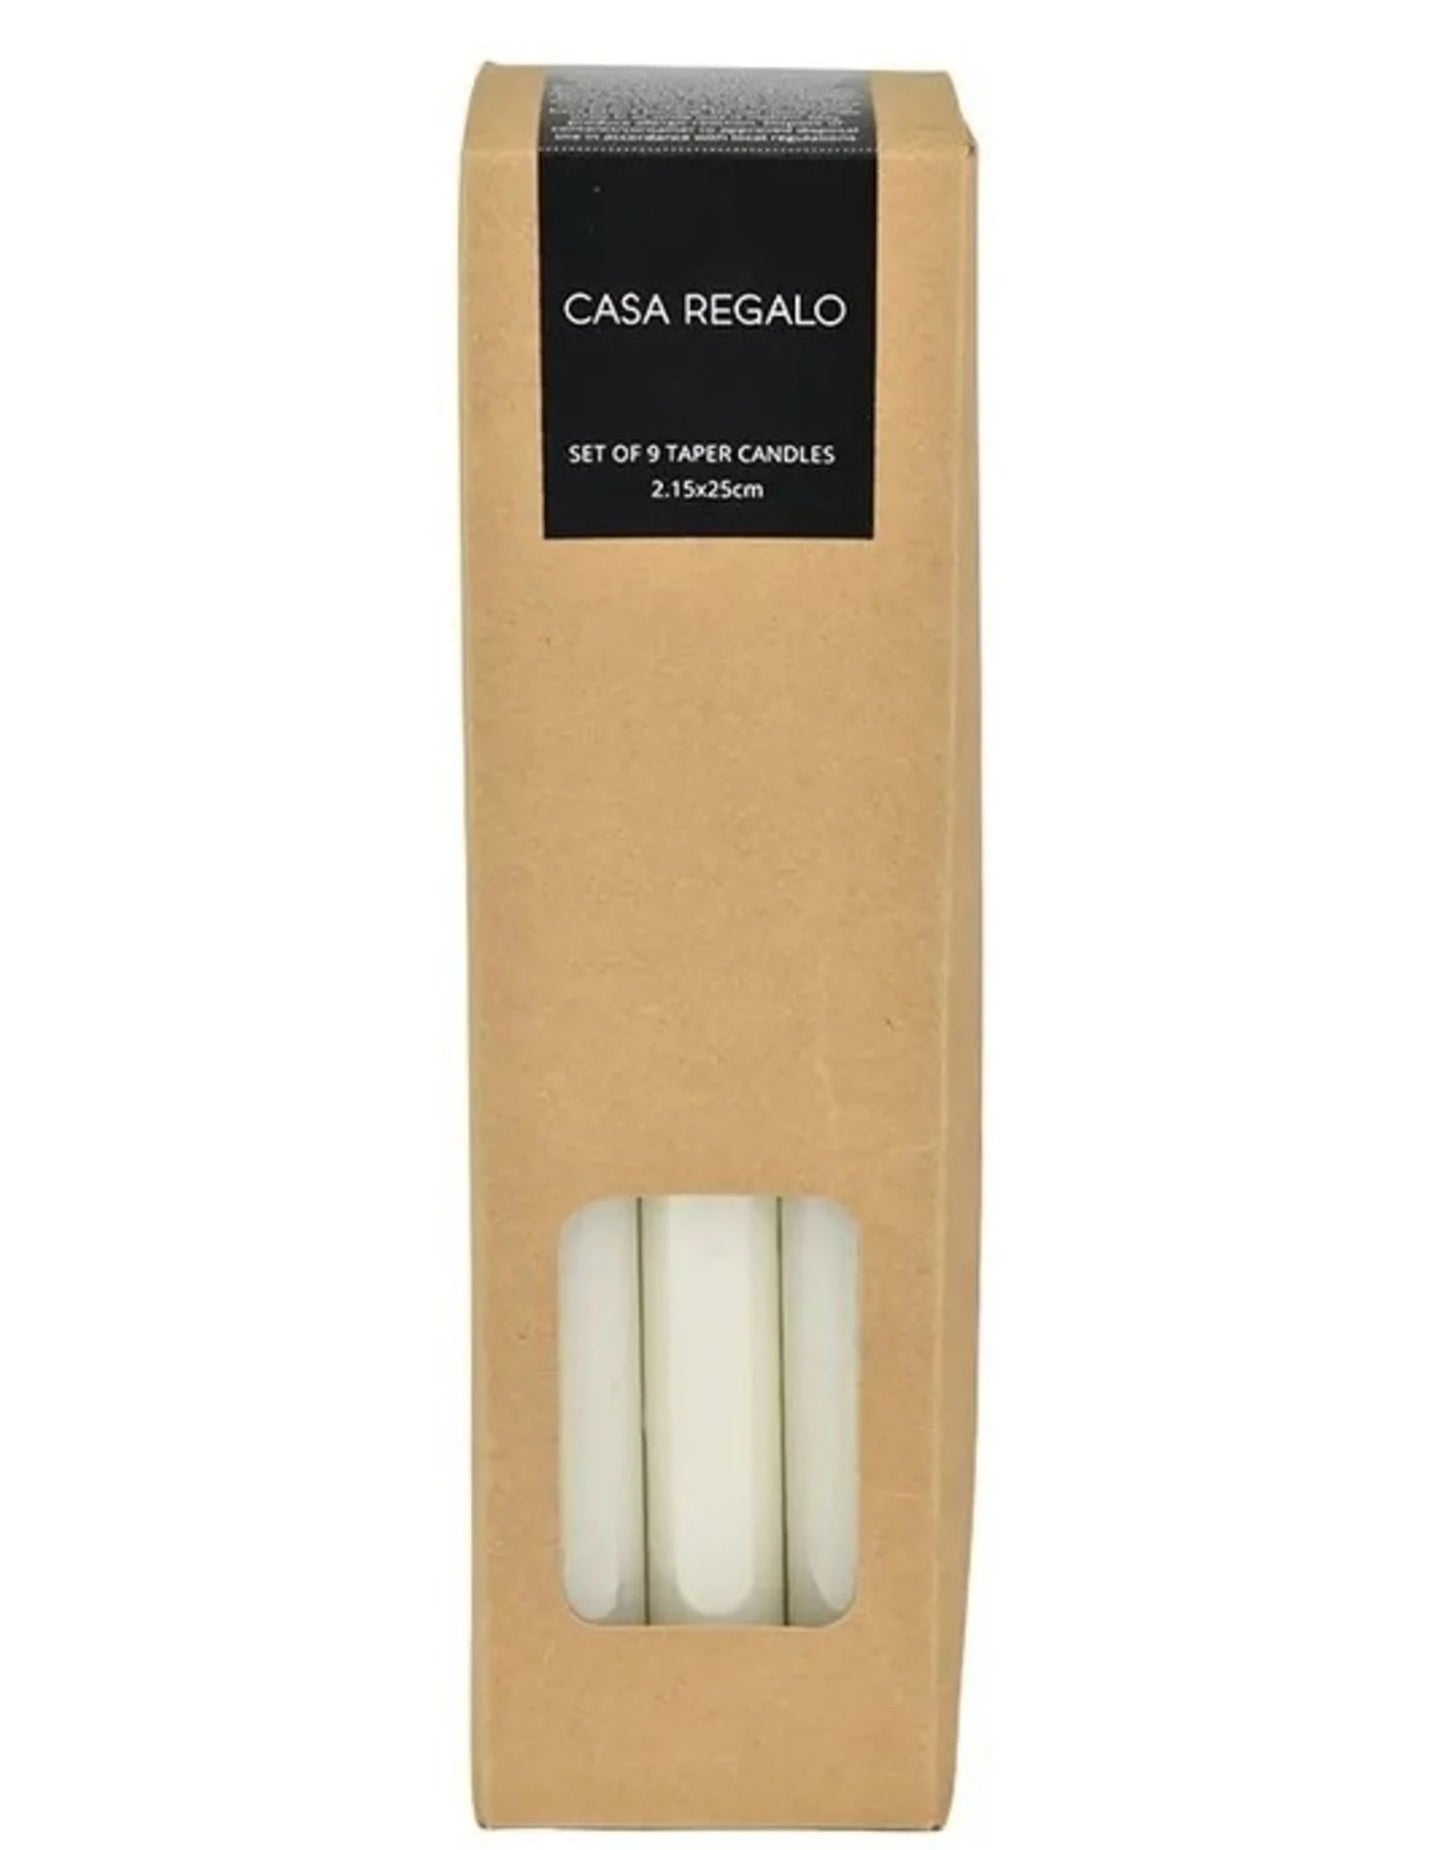 Casa Regalo Set of 9 Taper Candles